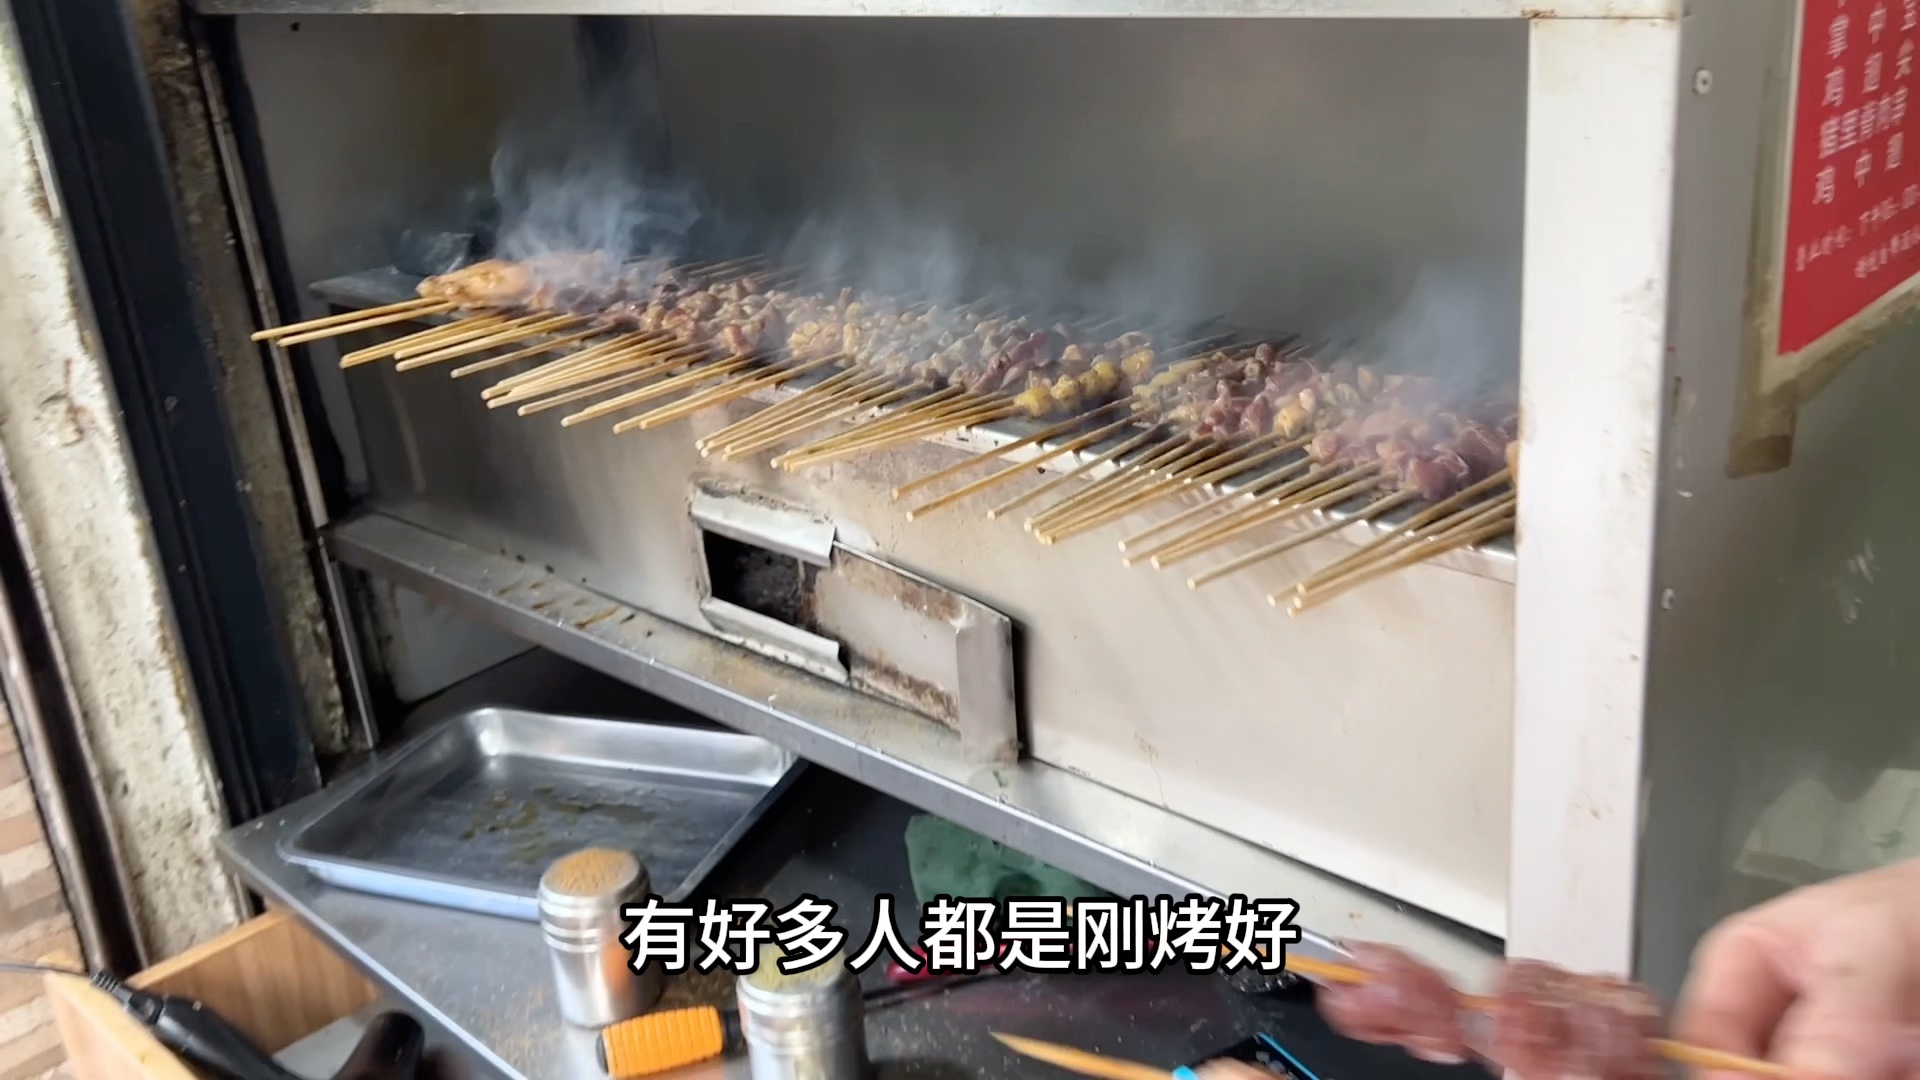 同事说是他心中上海排名第一的老上海烧烤，确实很不错